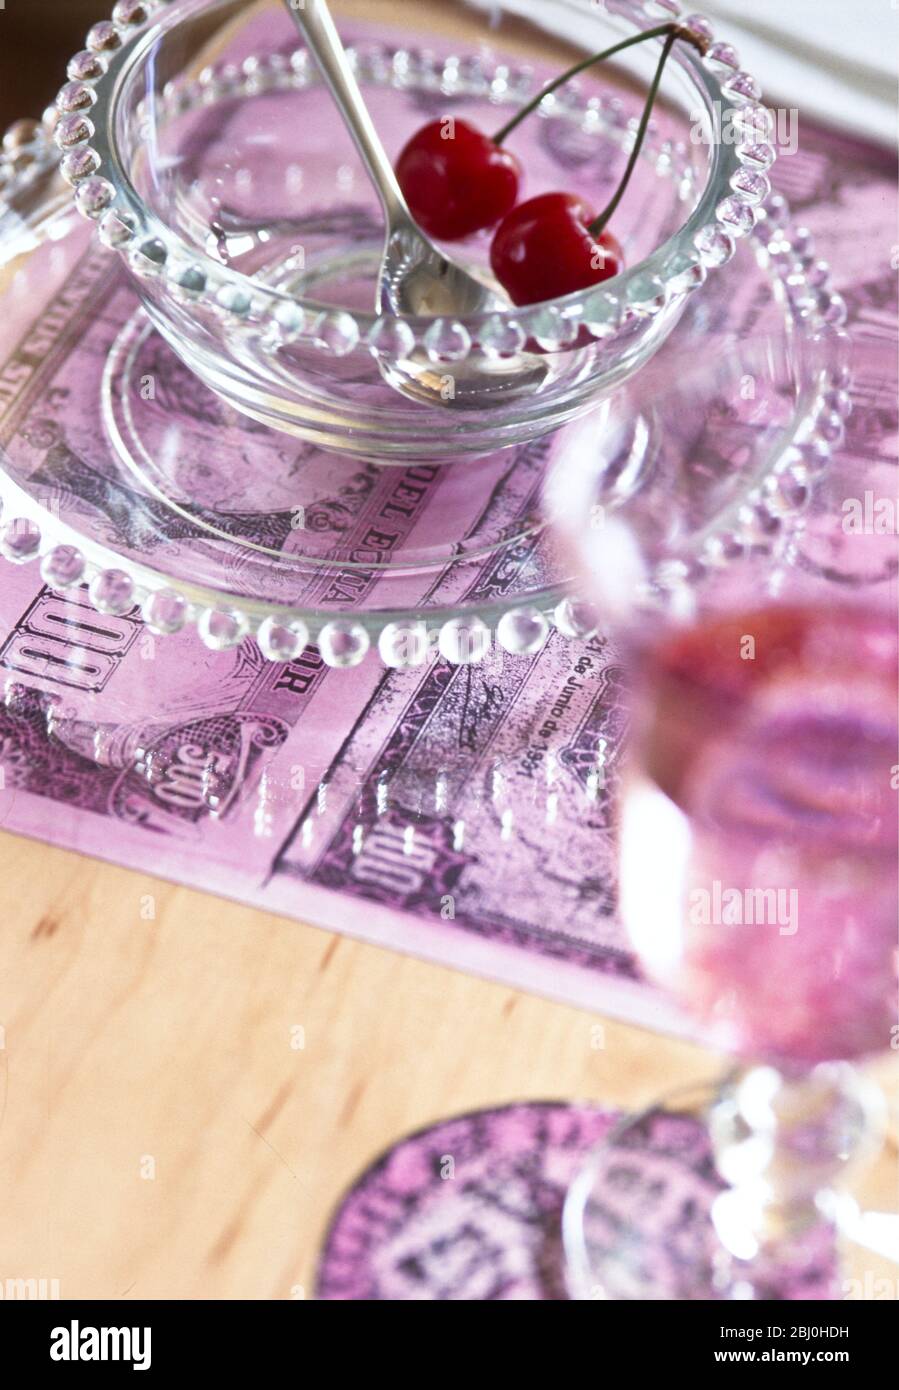 Ein Paar Kirschen in einer Glasschale mit Platzmatte aus vergrößerten Fotokopien alter Banknoten - Stockfoto